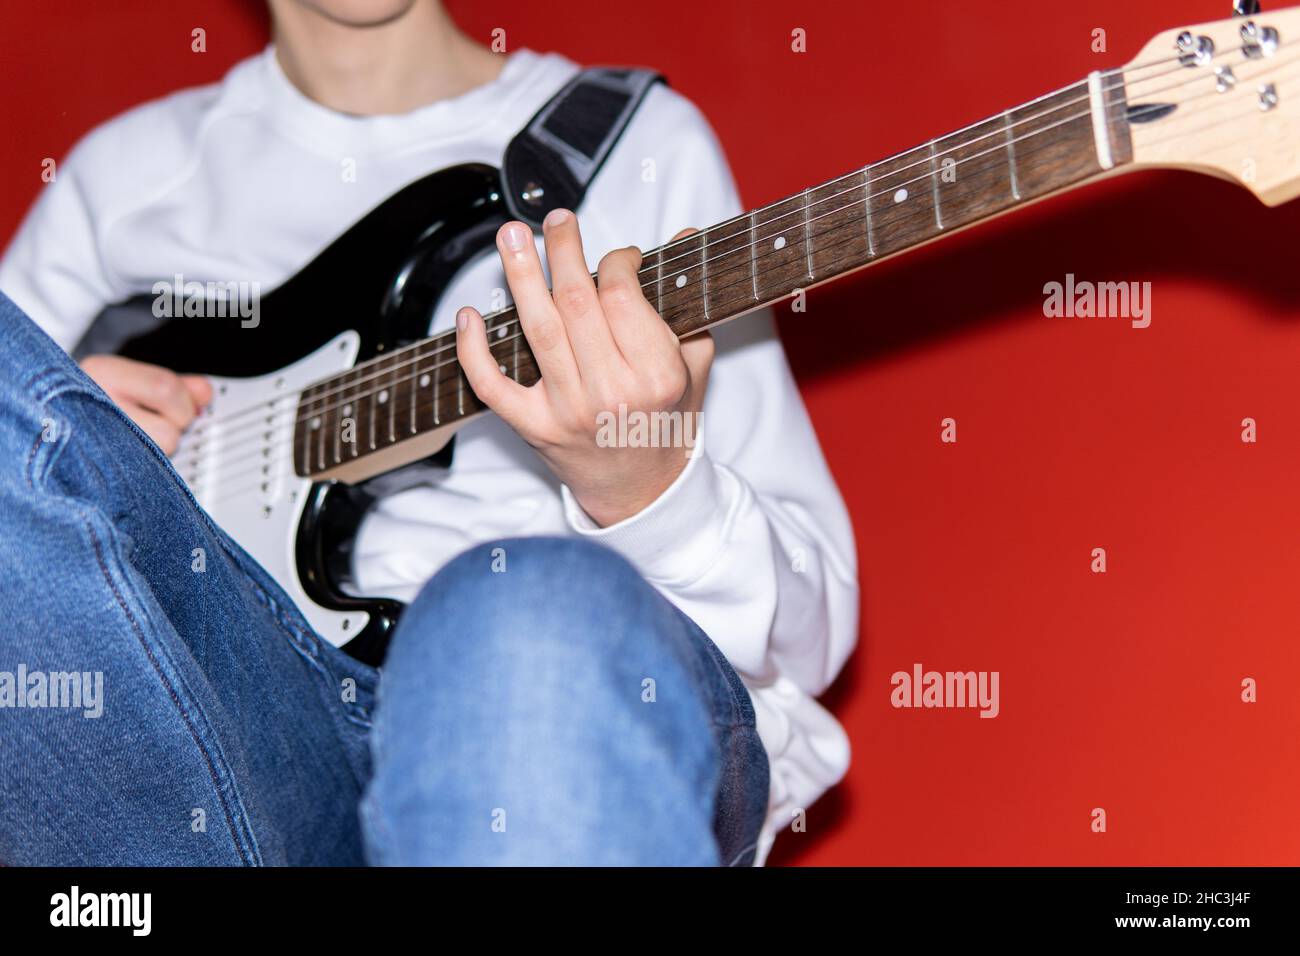 Jeune homme jouant de la guitare électrique.Musique, éducation aux instruments, divertissement, rock star, concert de musique et concept d'apprentissage Banque D'Images